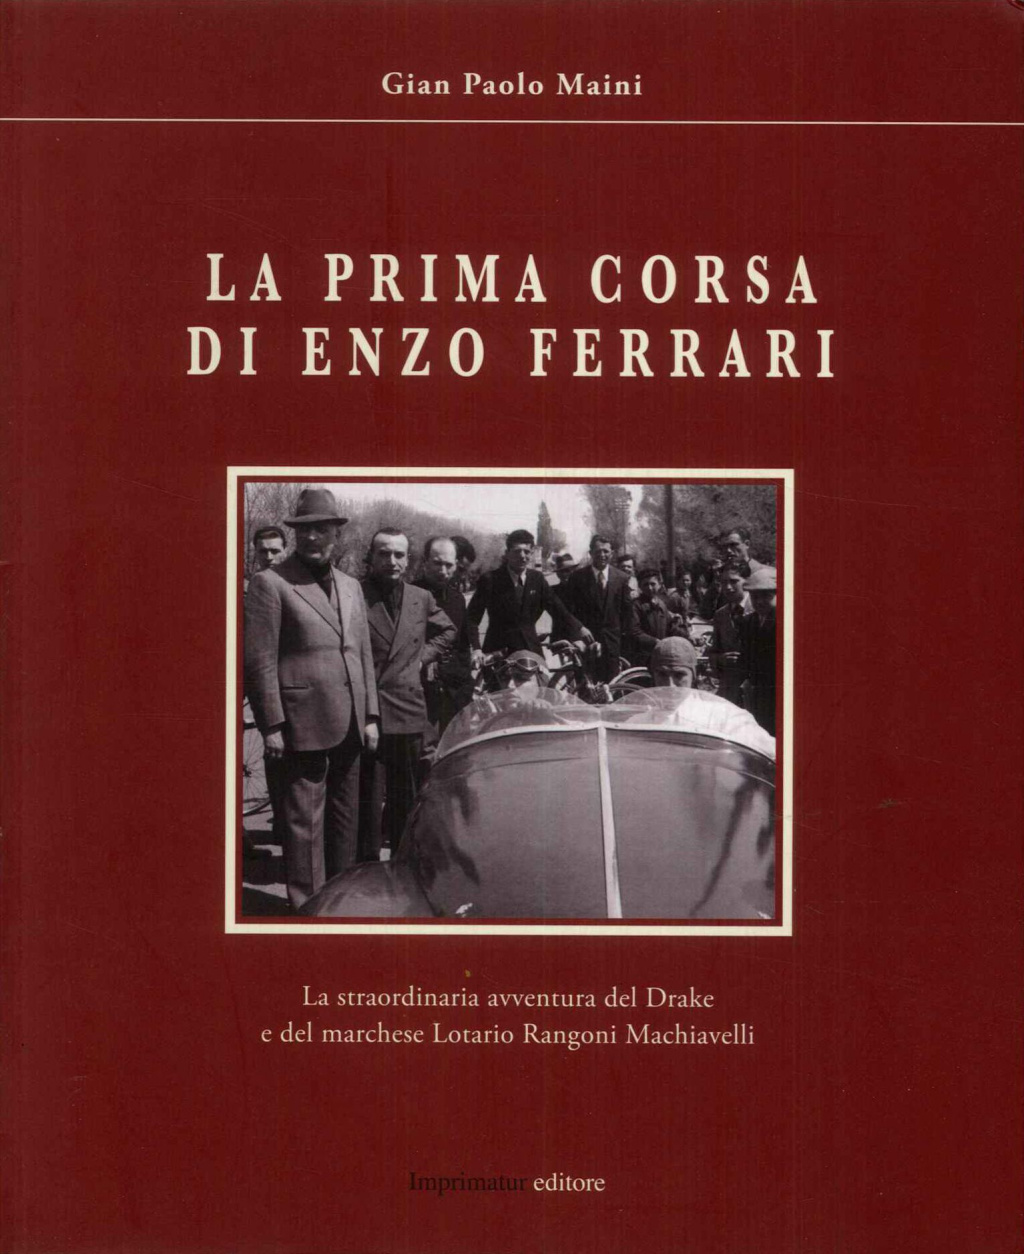 La prima corsa di Enzo Ferrari